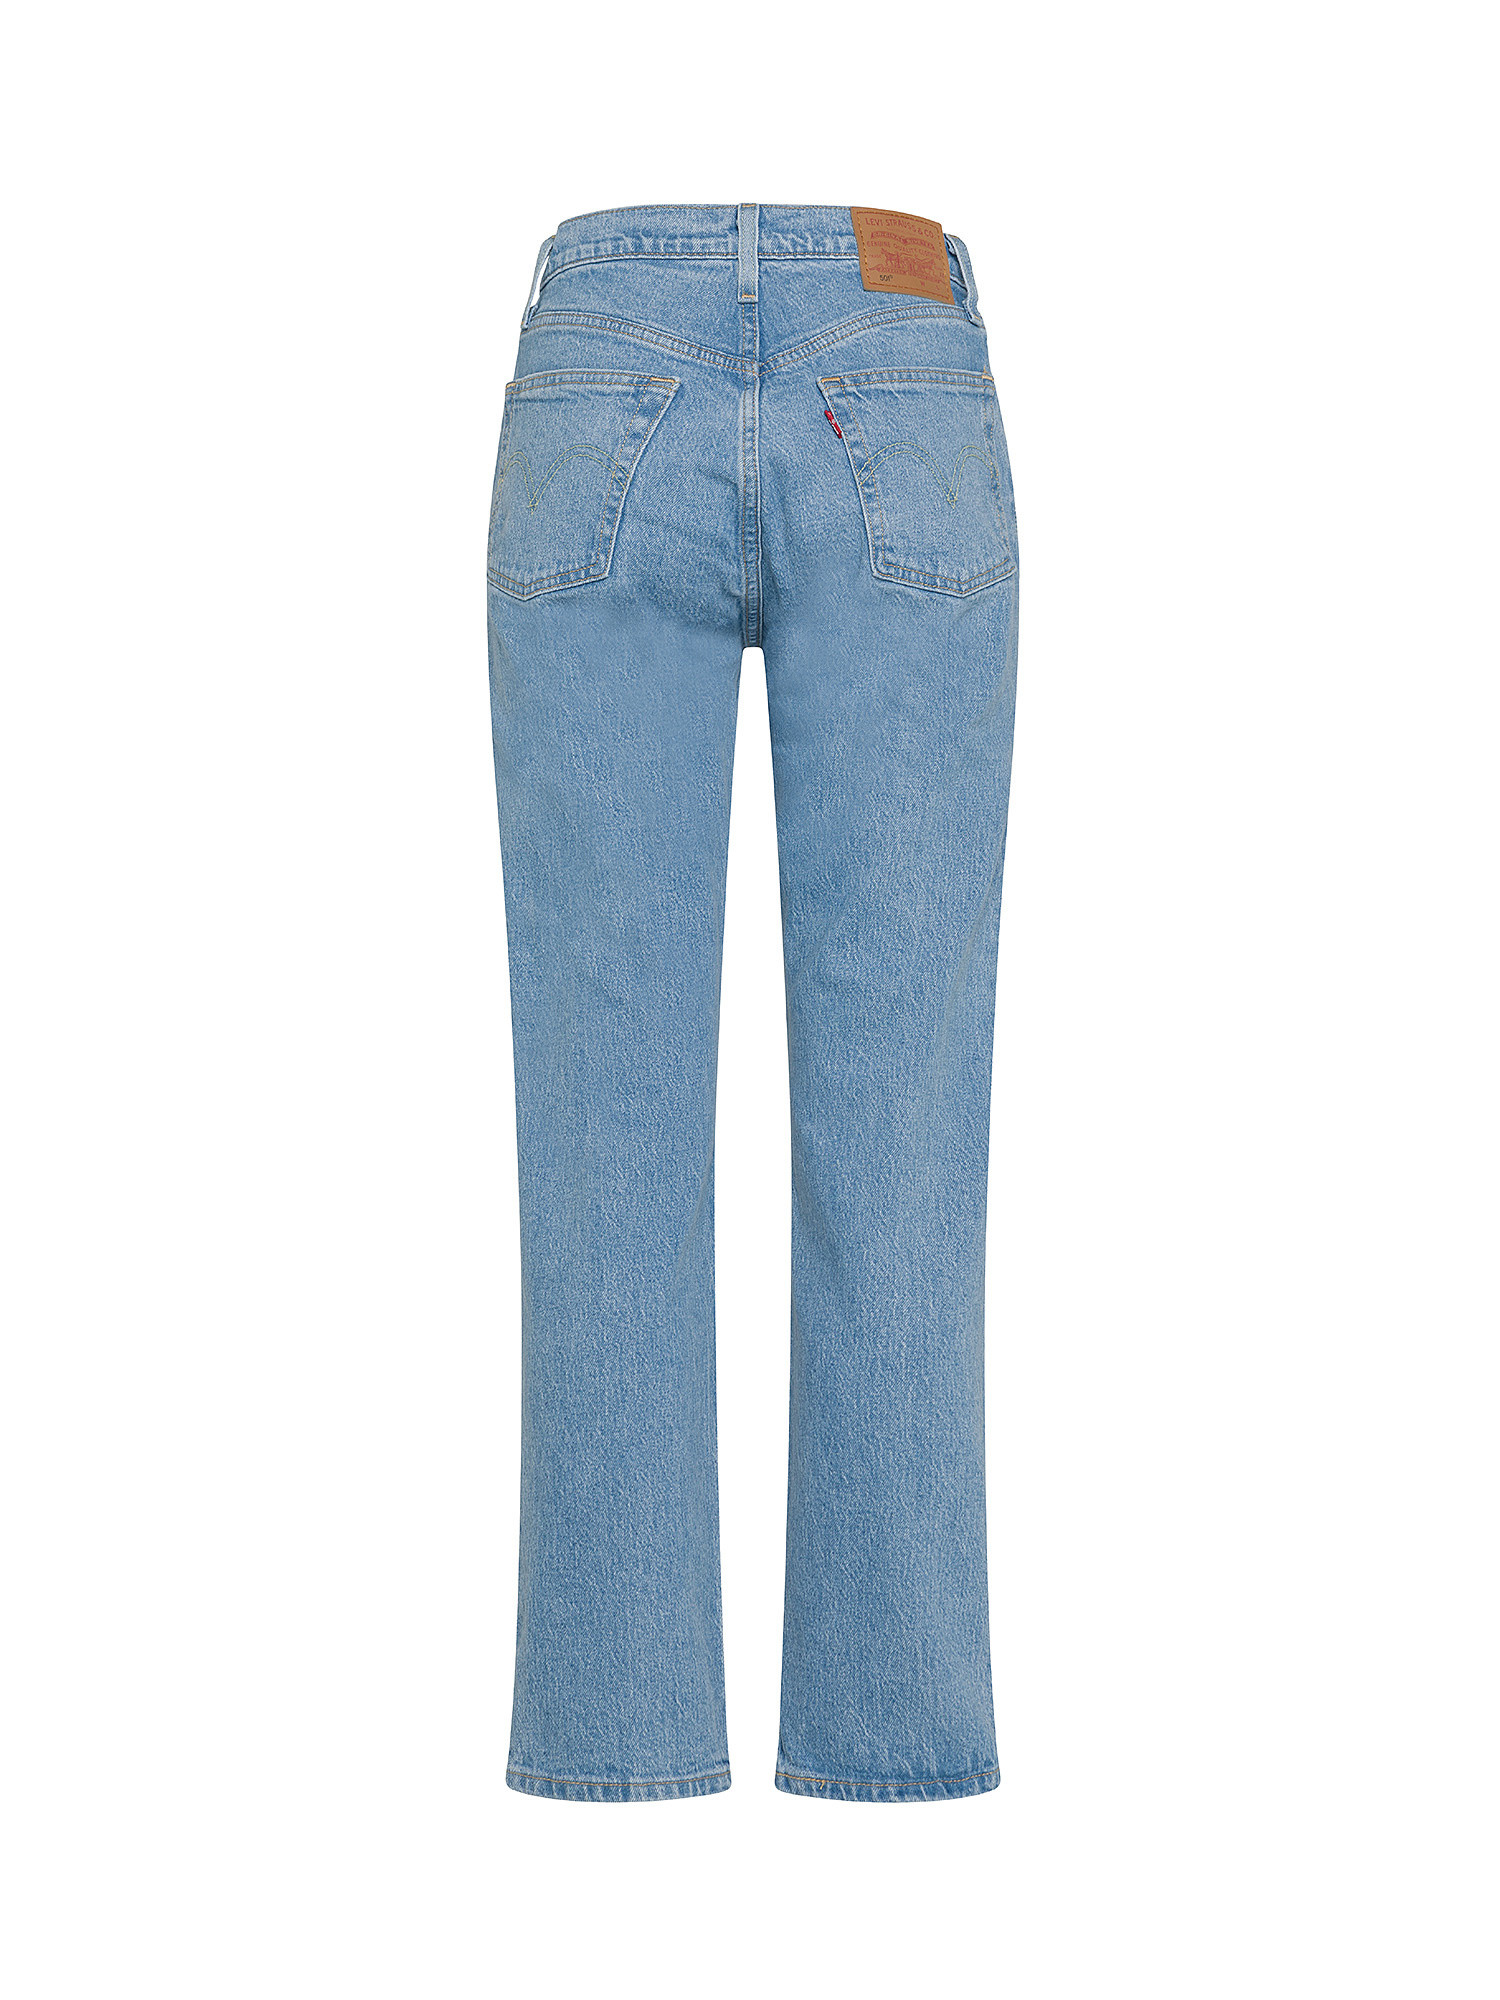 Levi's - original 501® jeans, Denim, large image number 1